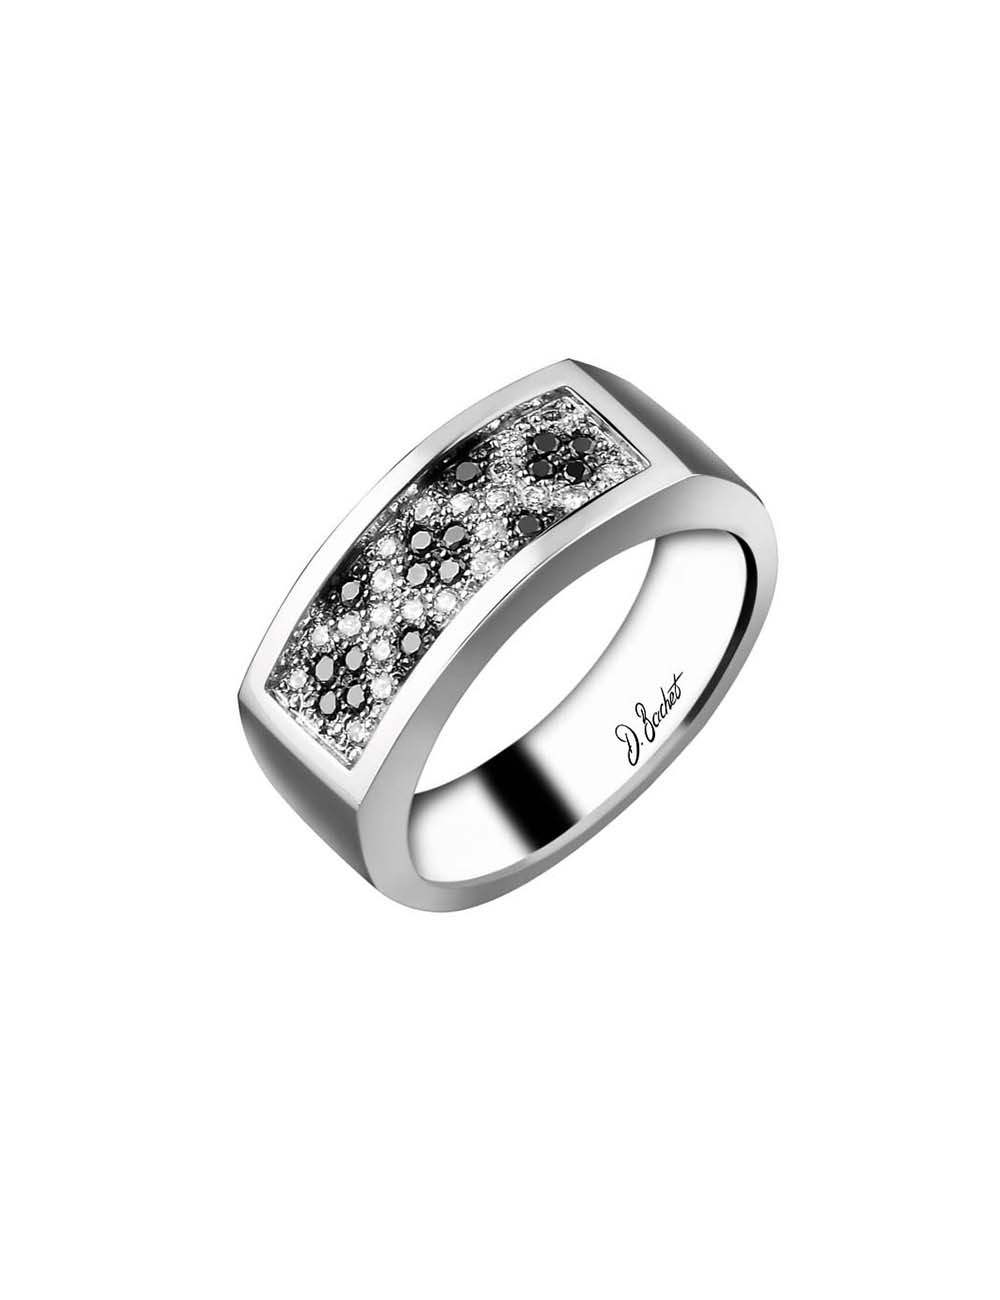 Chevalière 'Épicurien' Art déco avec 38 diamants, bijou homme qui combine joie de vivre et élégance moderne.